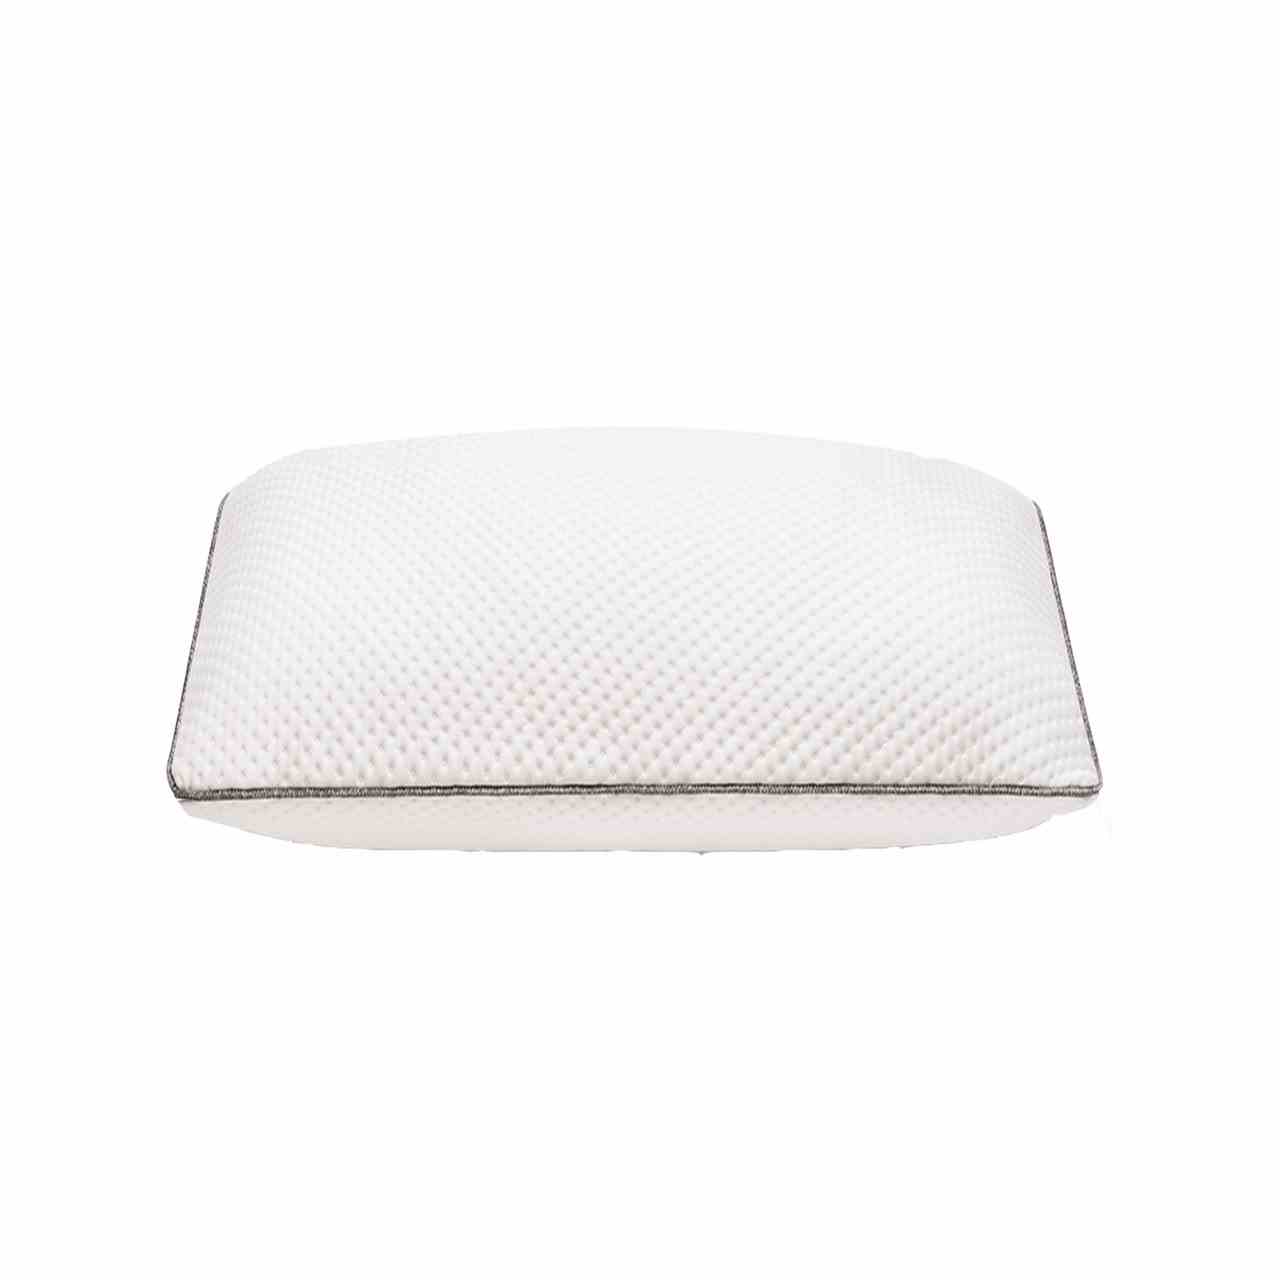 Foam Pillows white pillow on white background